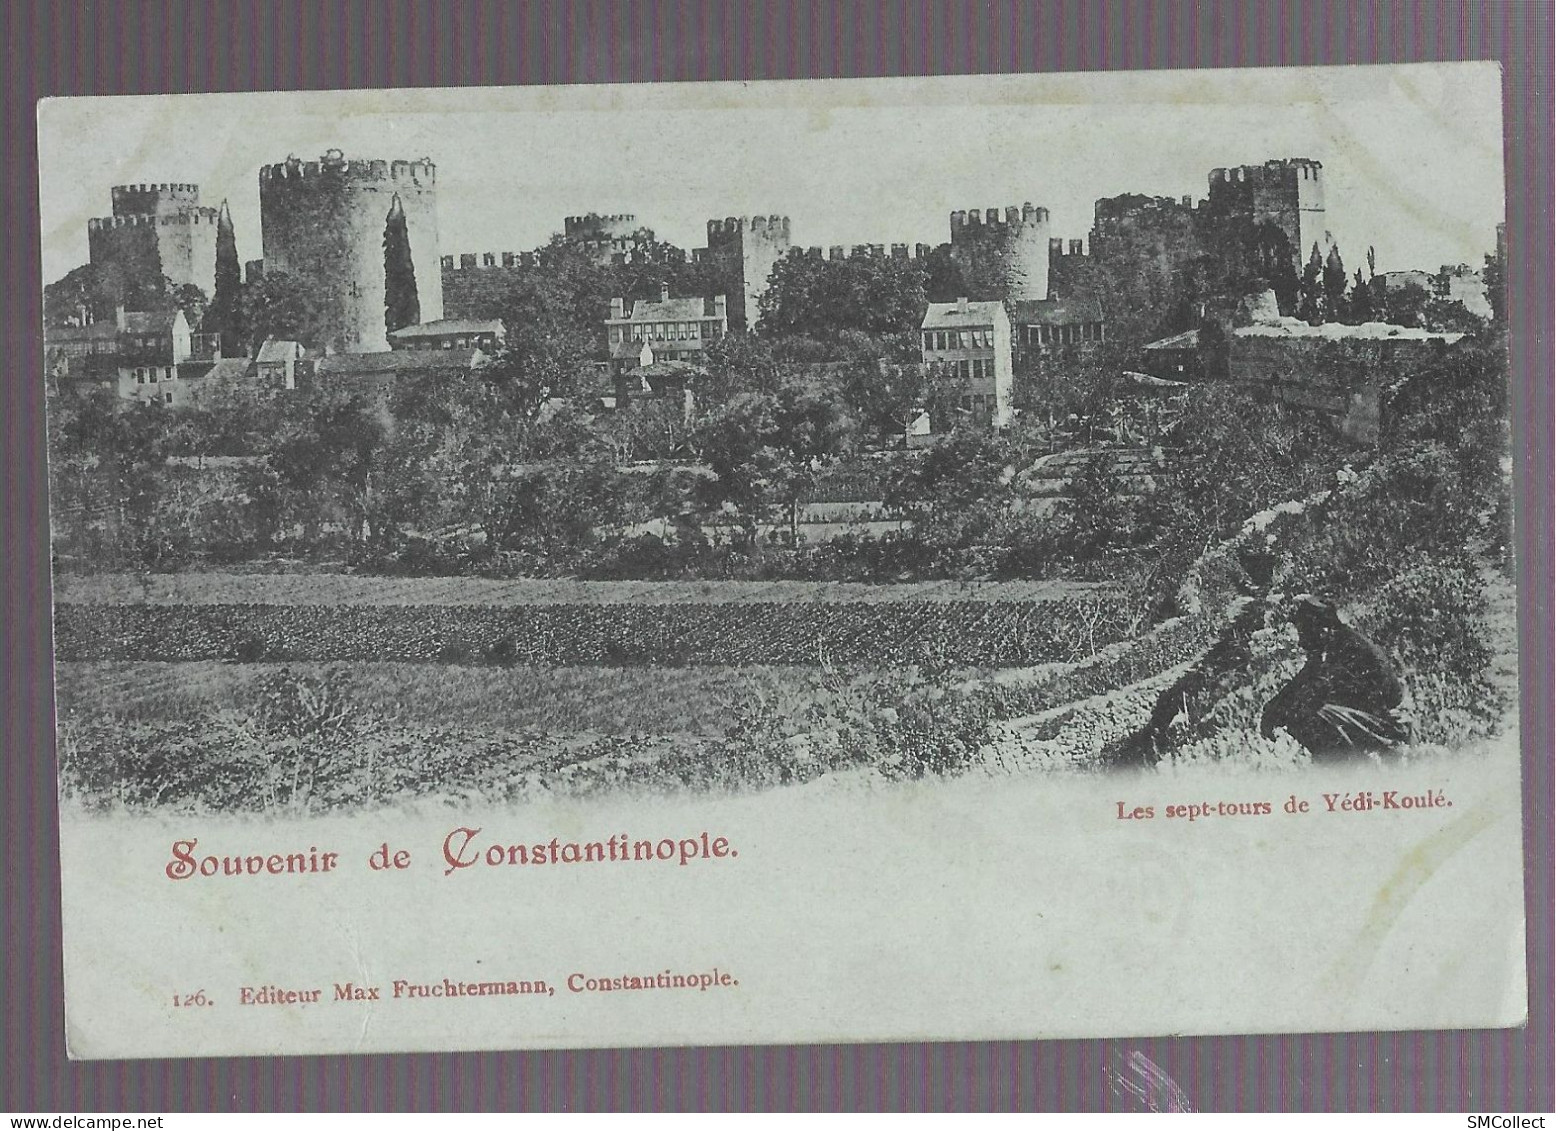 VOIR DESCRIPTION. Souvenir De Constantinople, Les Sept Tours De Yédi-Koulé (9921) - Turquia